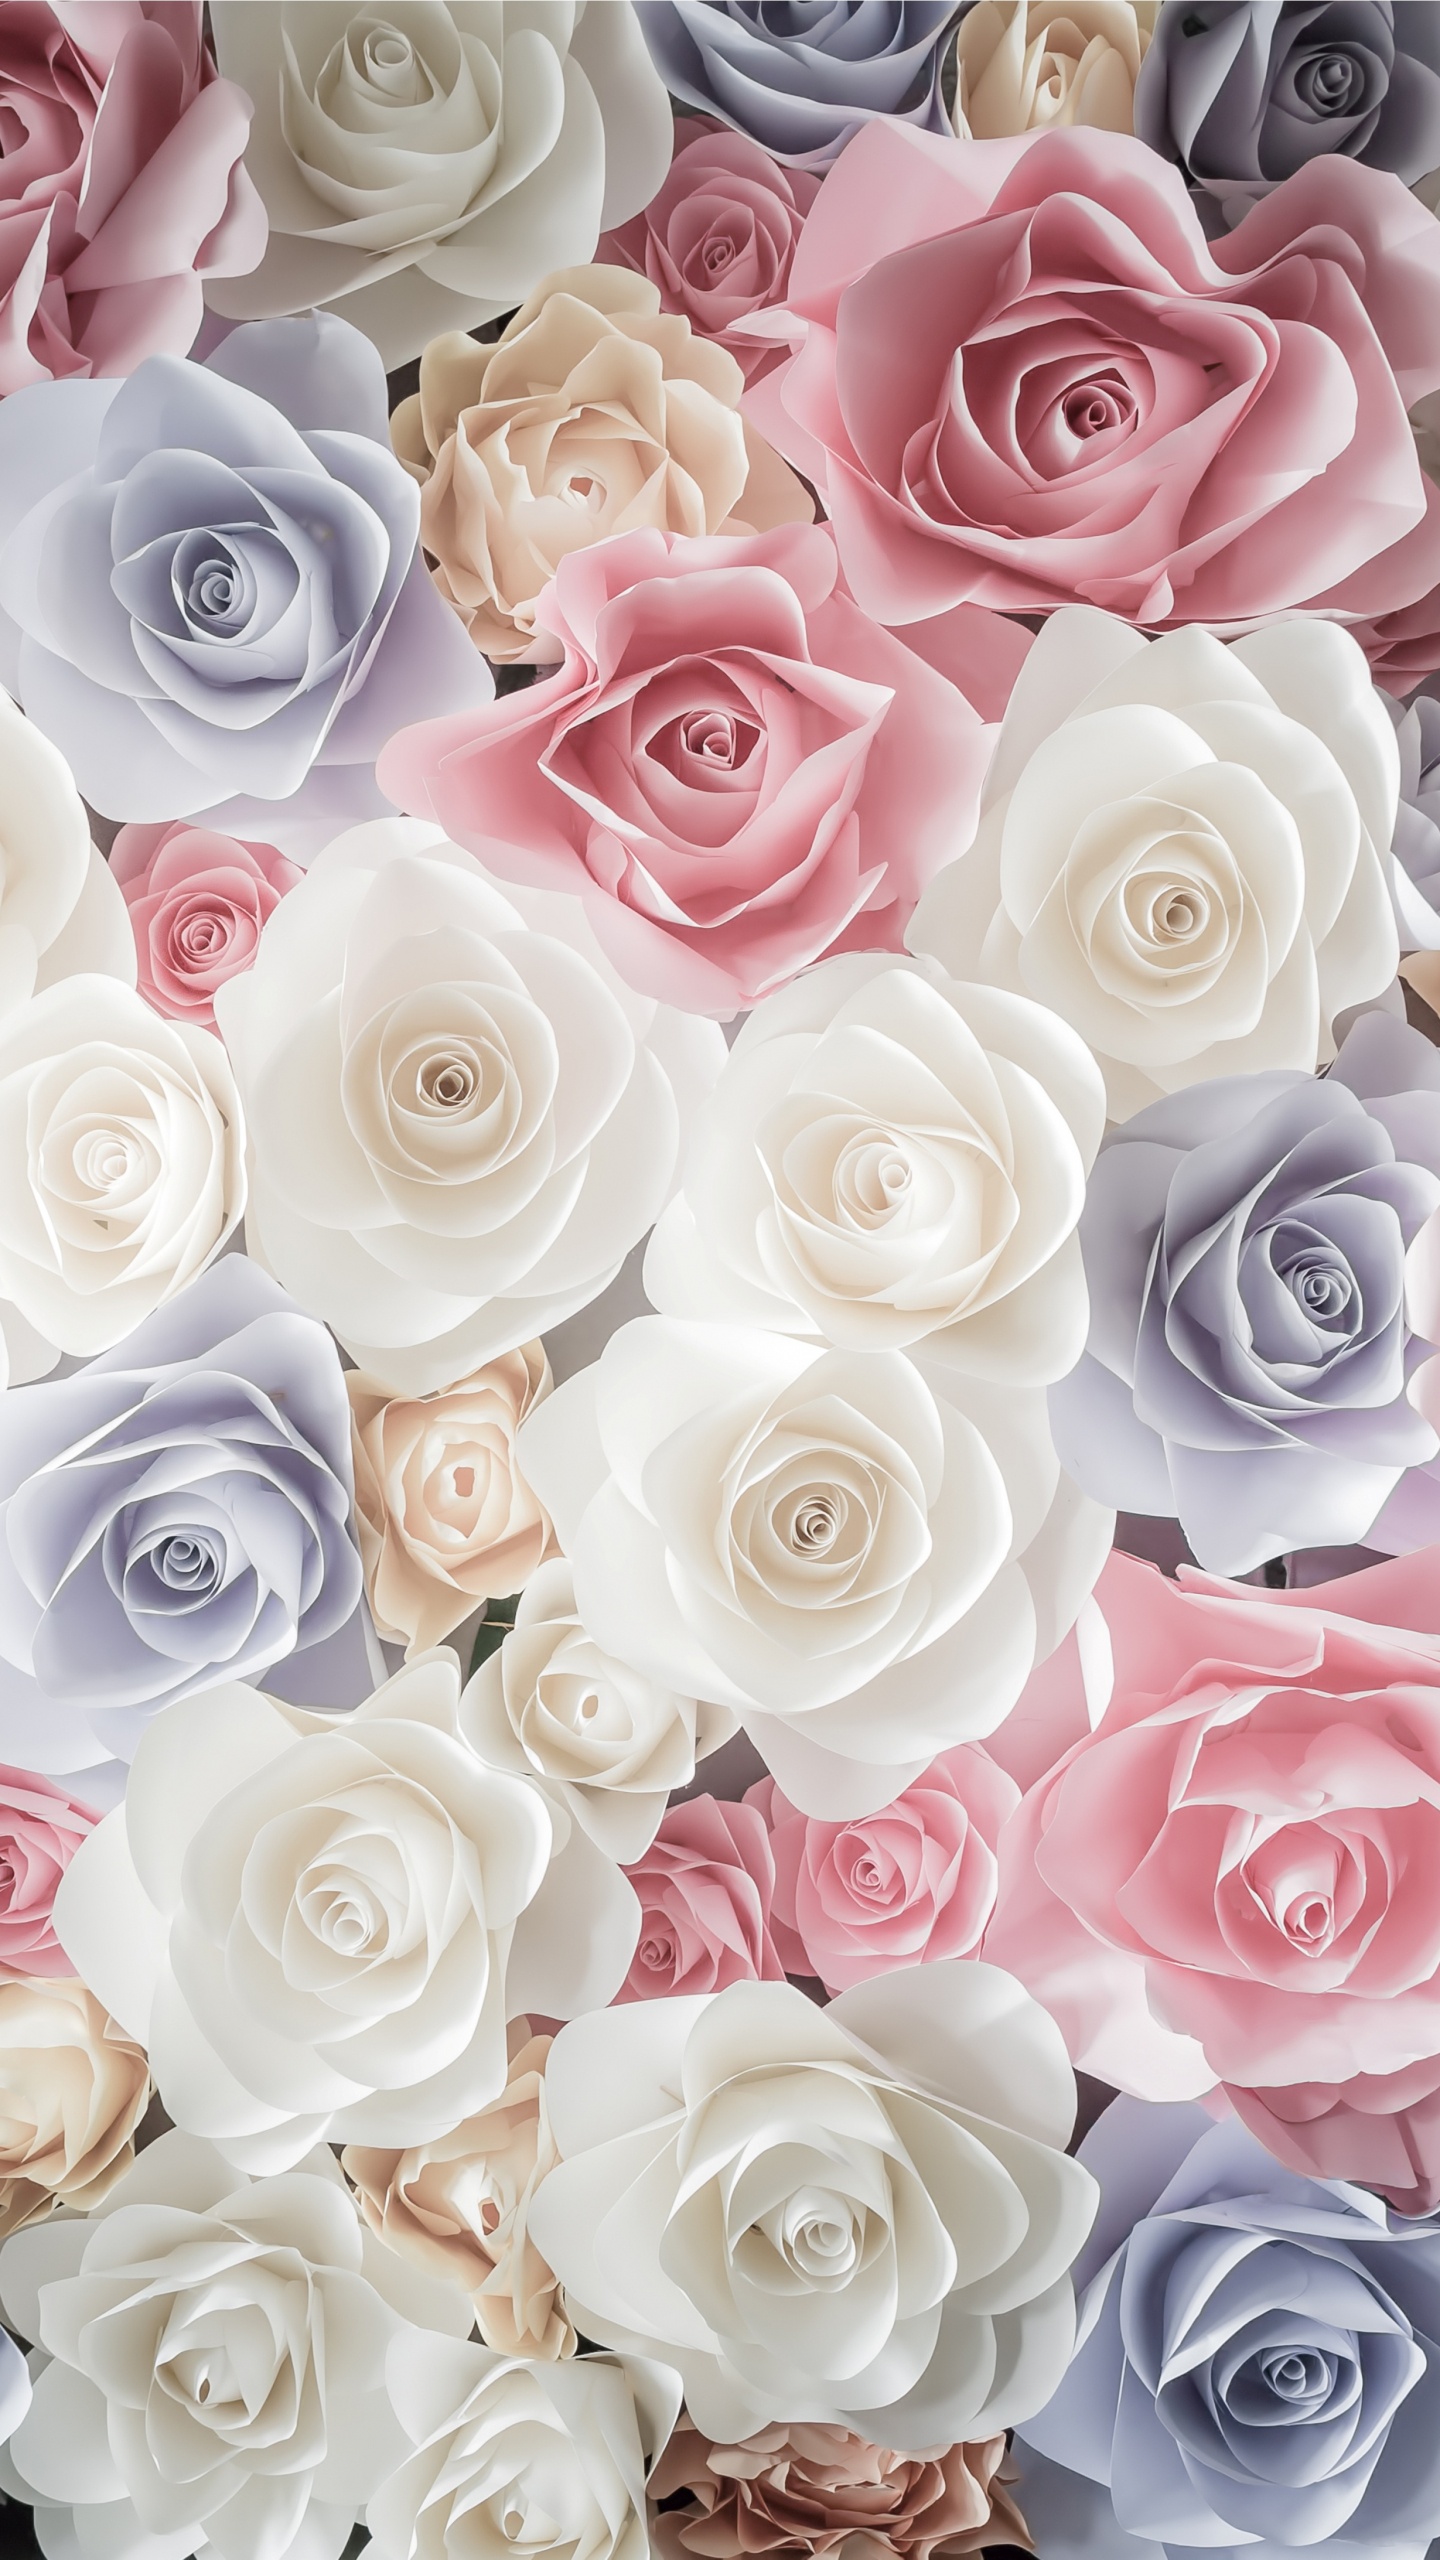 玫瑰花园, 切花, 粉红色, 玫瑰家庭, 花卉设计 壁纸 1440x2560 允许